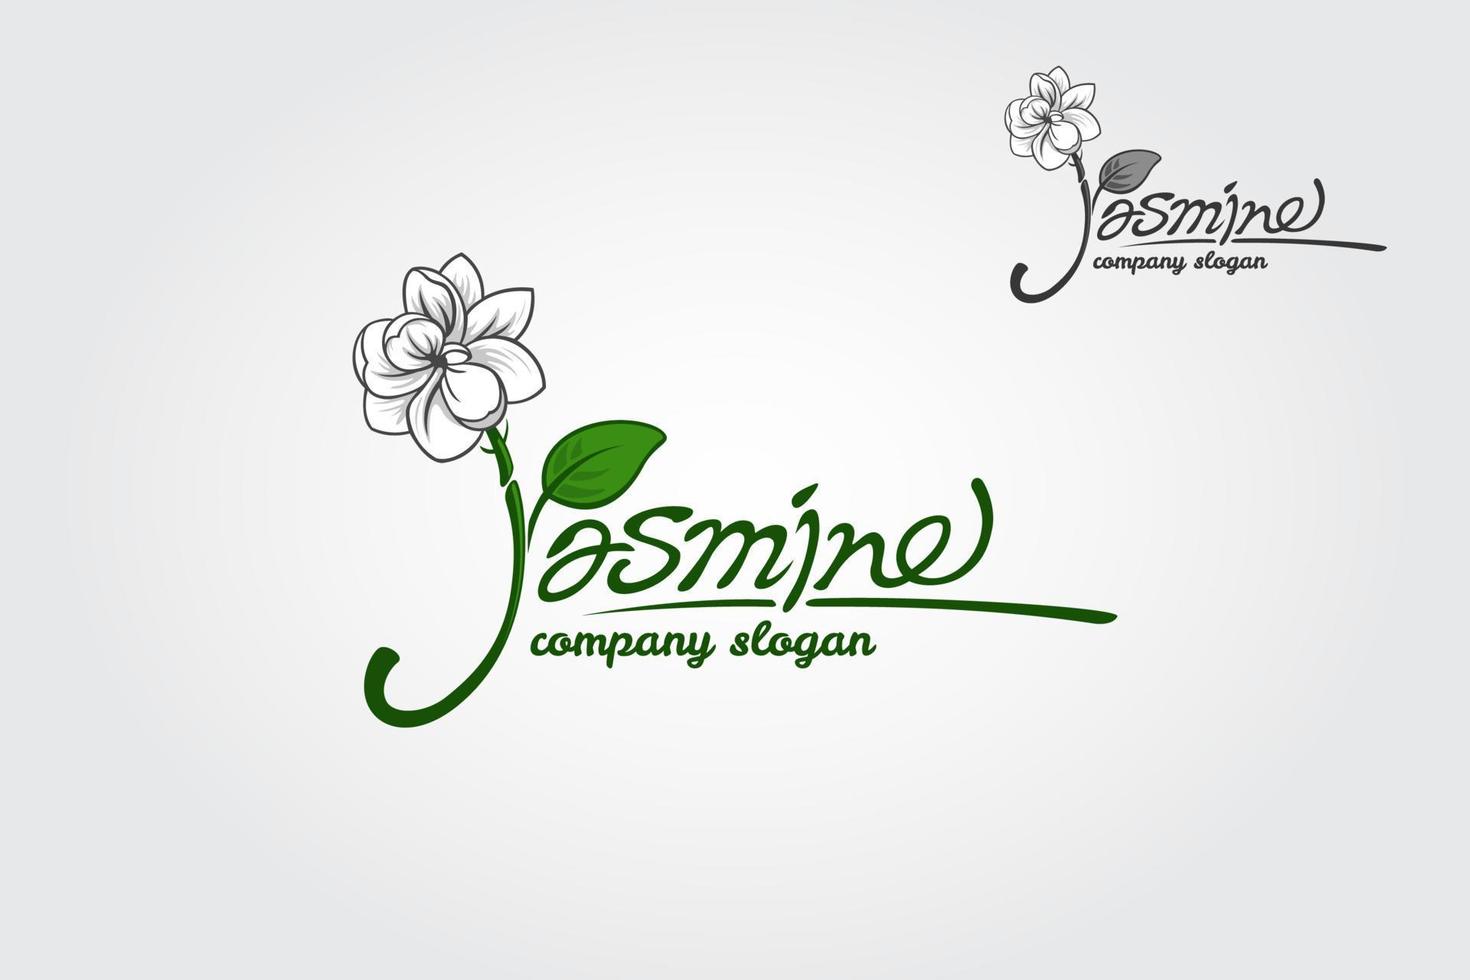 jasmine est une police de script de luxe avec une touche d'écriture élégante, très élégante et moderne. conçu pour ceux qui ont besoin d'un logo illustratif, fiable, mémorable, modifiable, simple et polyvalent. vecteur